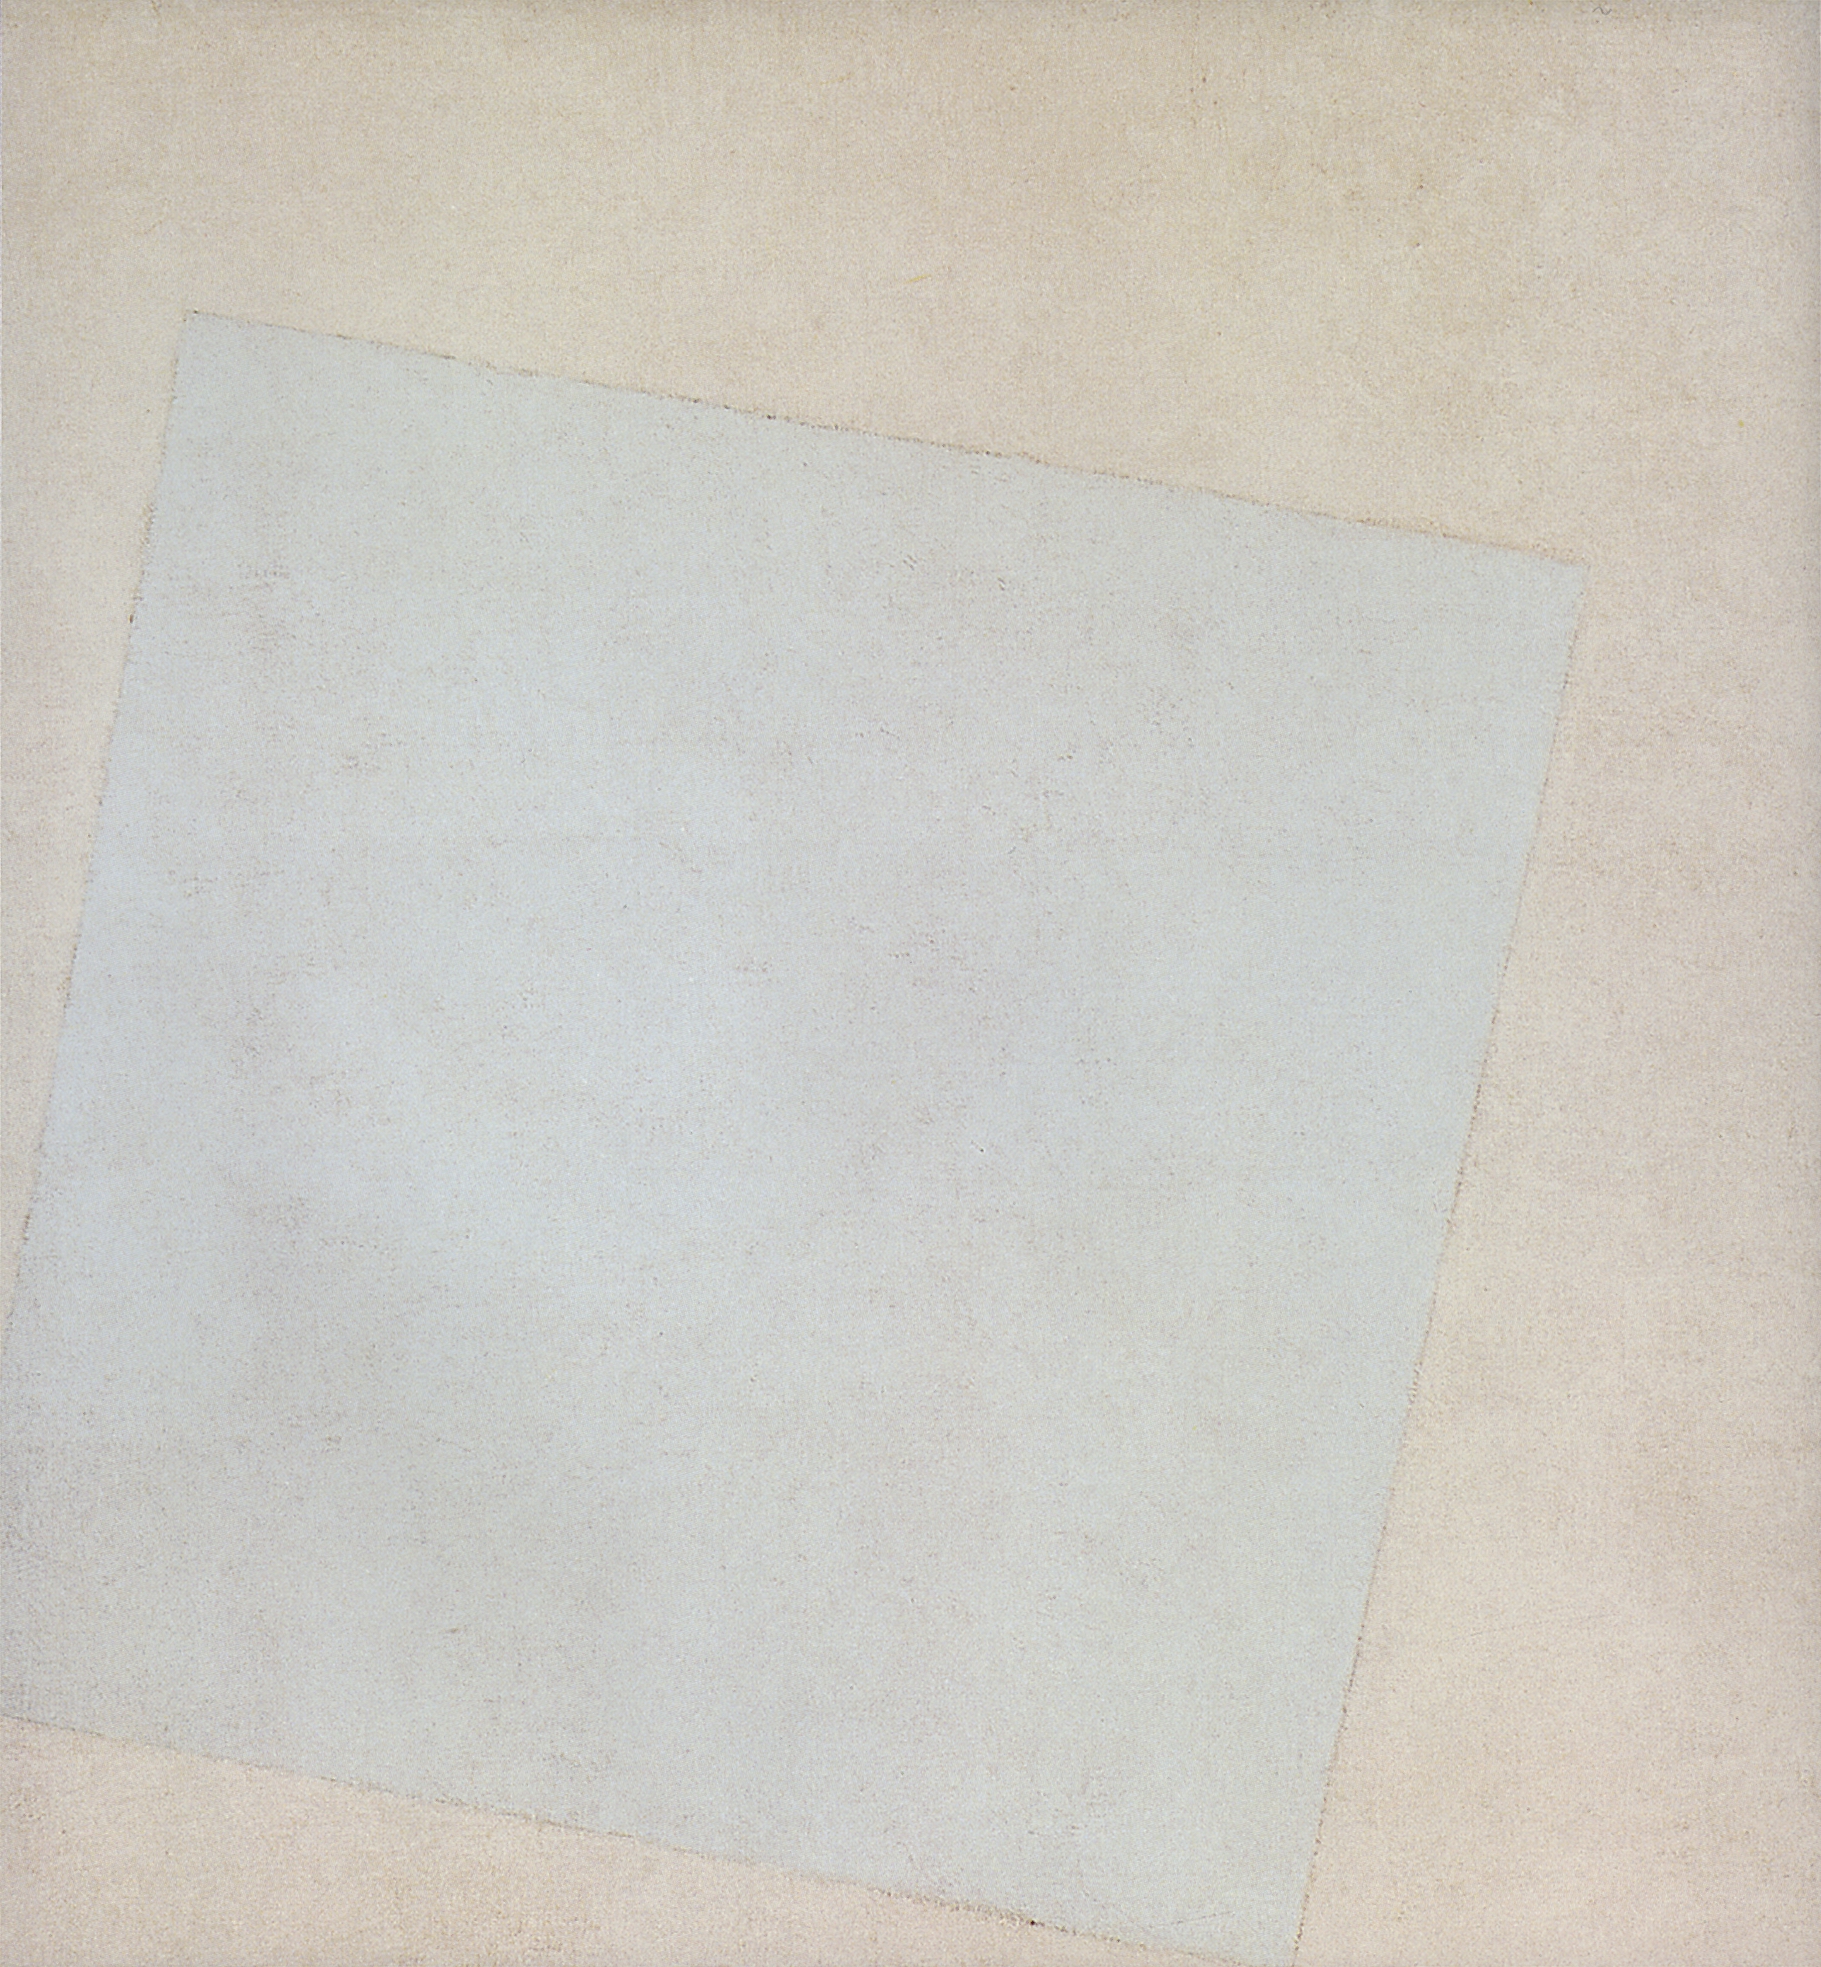 Малевич. Белое на белом (Белый квадрат). 1917